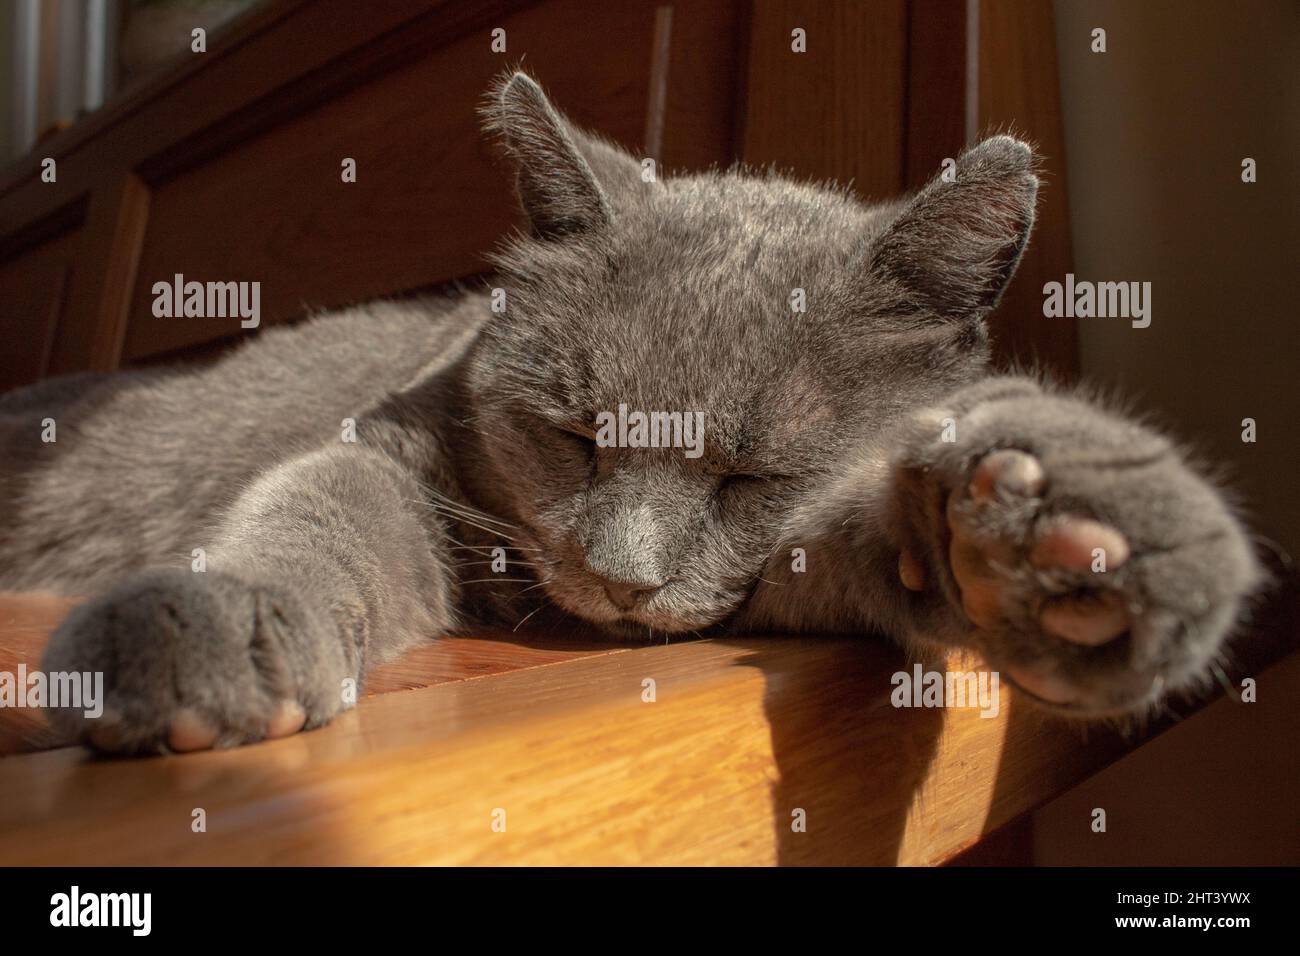 Nella foto ritroviamo un gatto di razza certosino che dorme steso su una panchina al Sole in una tipica sua giornata Banque D'Images